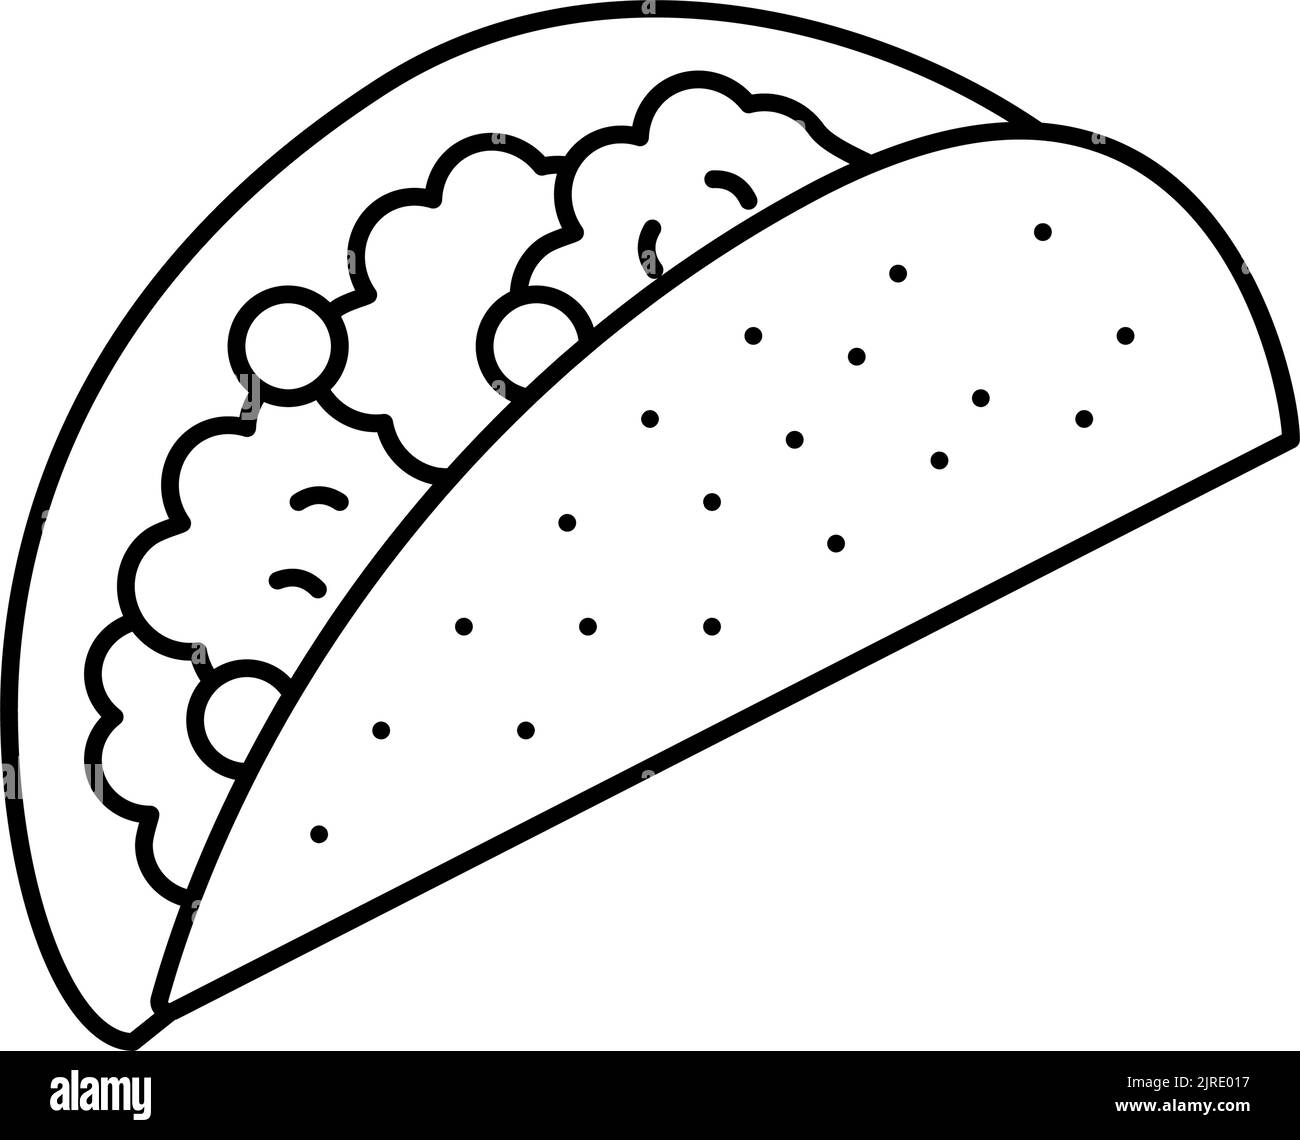 Abbildung des Symbols für die taco-Lebensmittellinie Stock Vektor